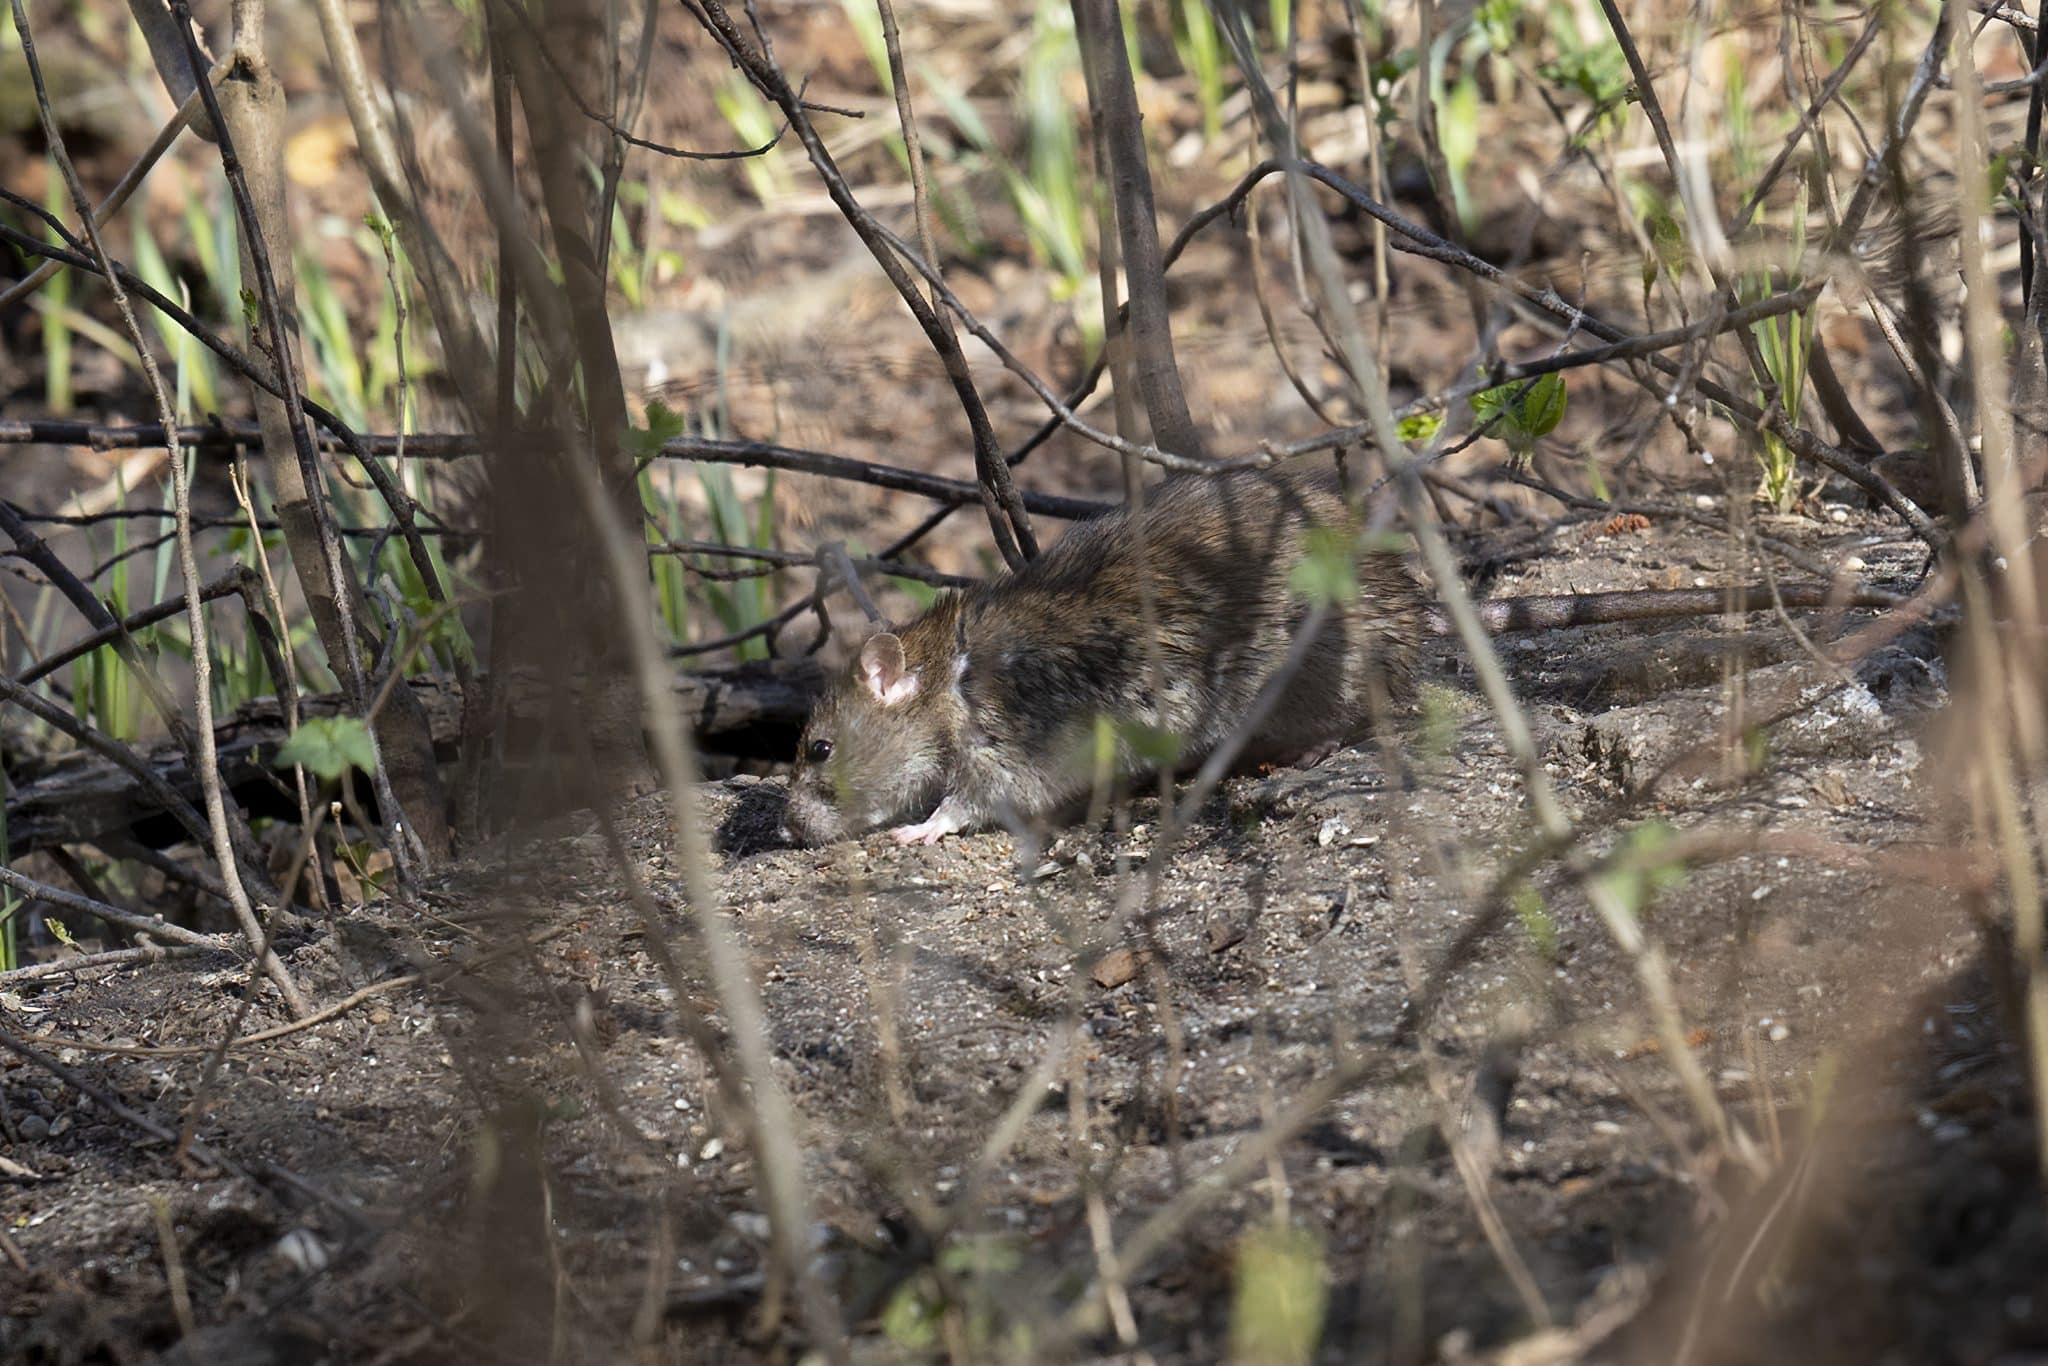 norway rat on forest floor